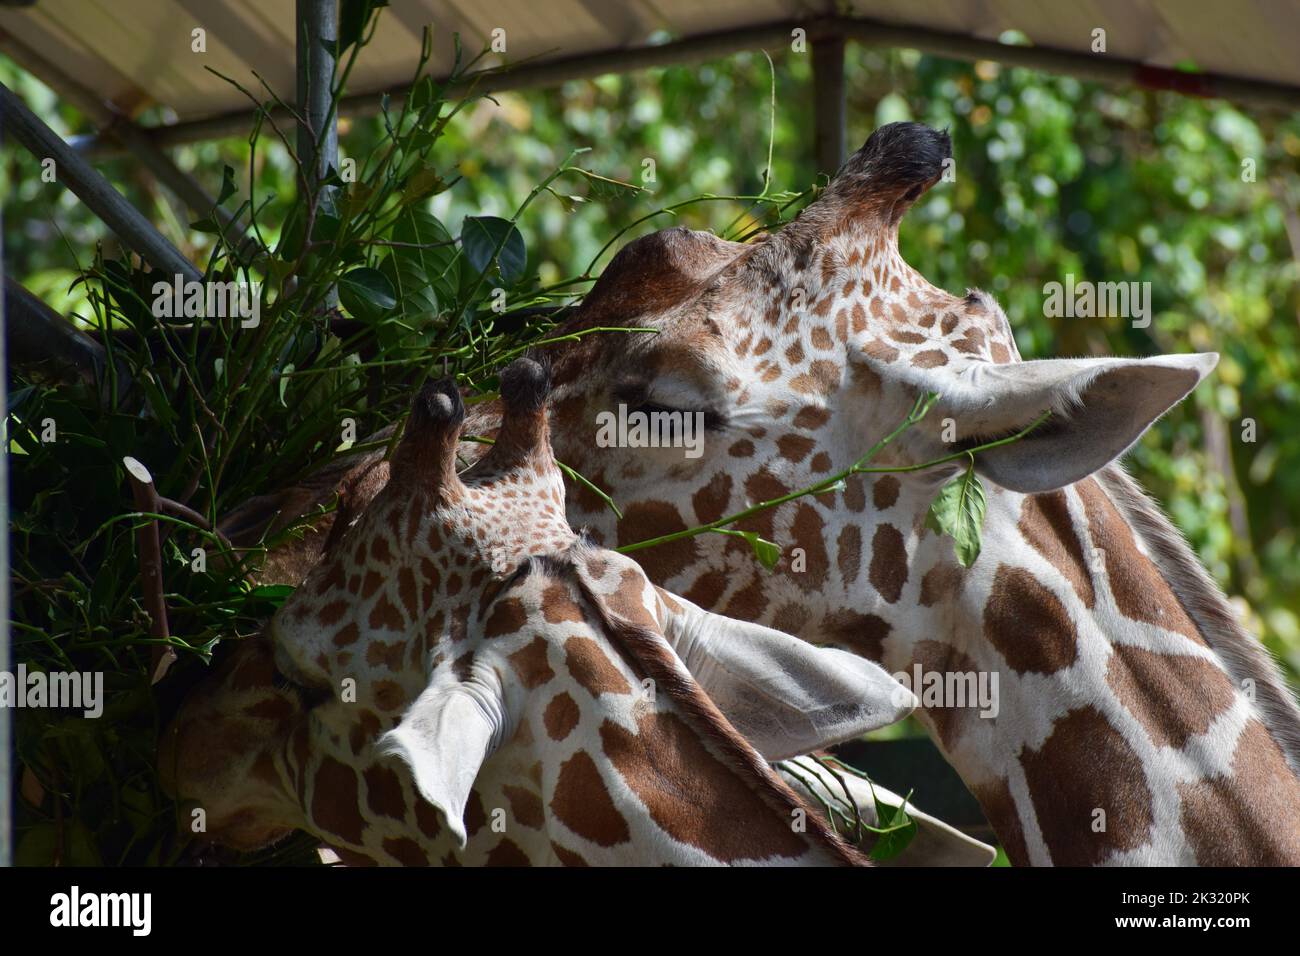 giraffe eating leaves Stock Photo